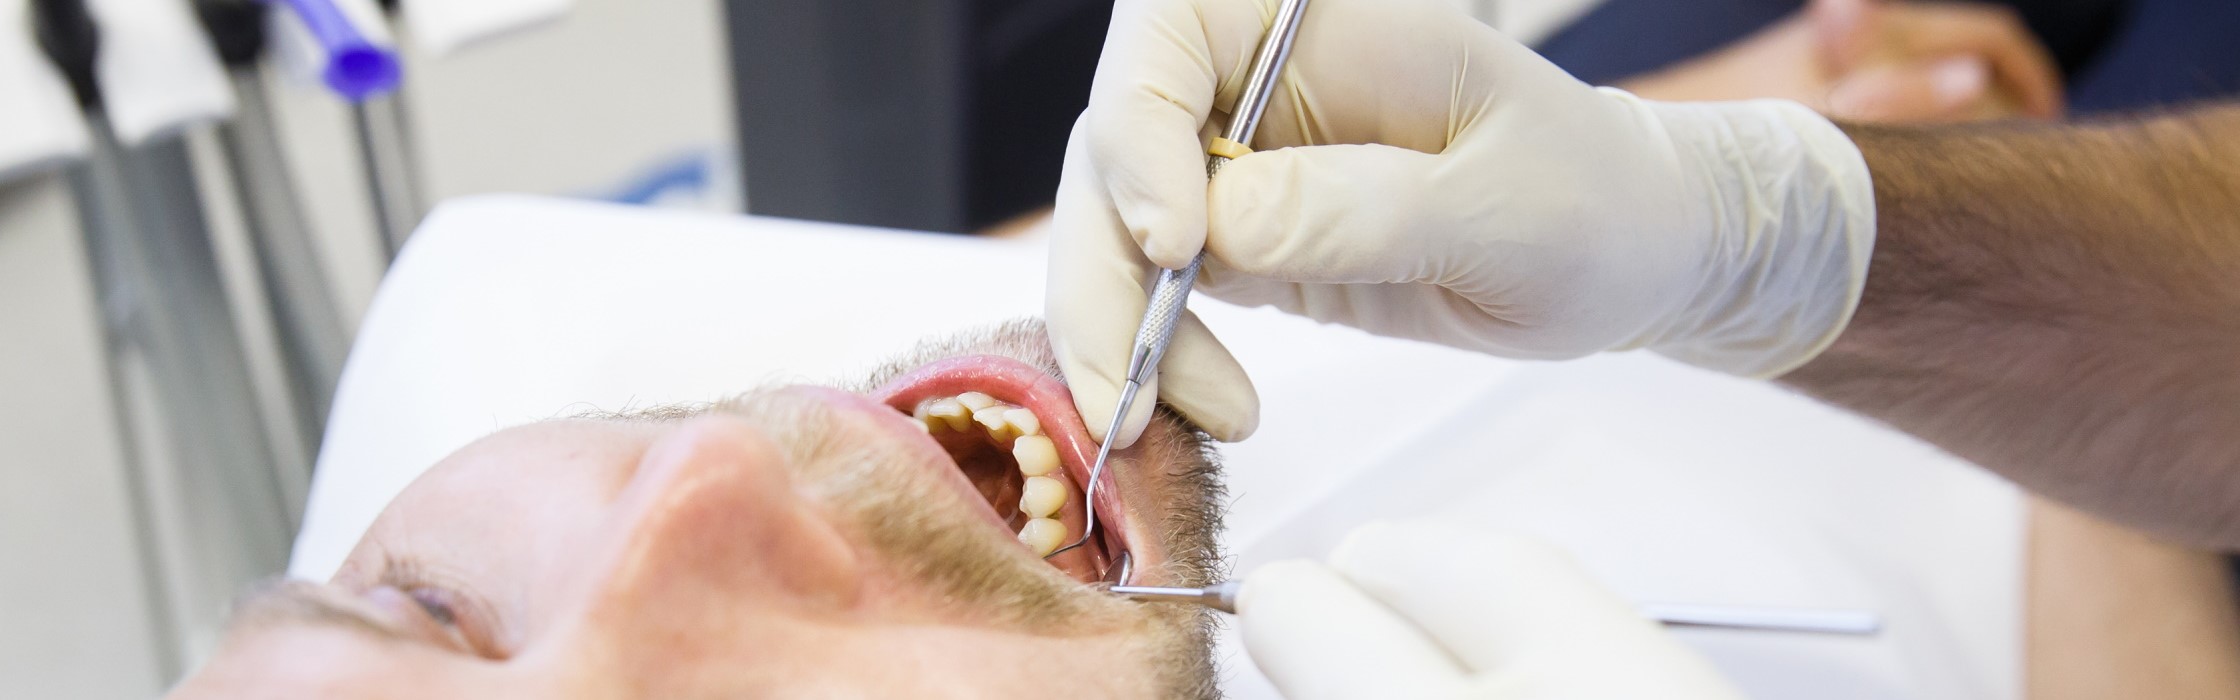 Wurzelbehandlung – Definition, Ablauf und Alternativen zur Therapie des Zahnwurzelkanals